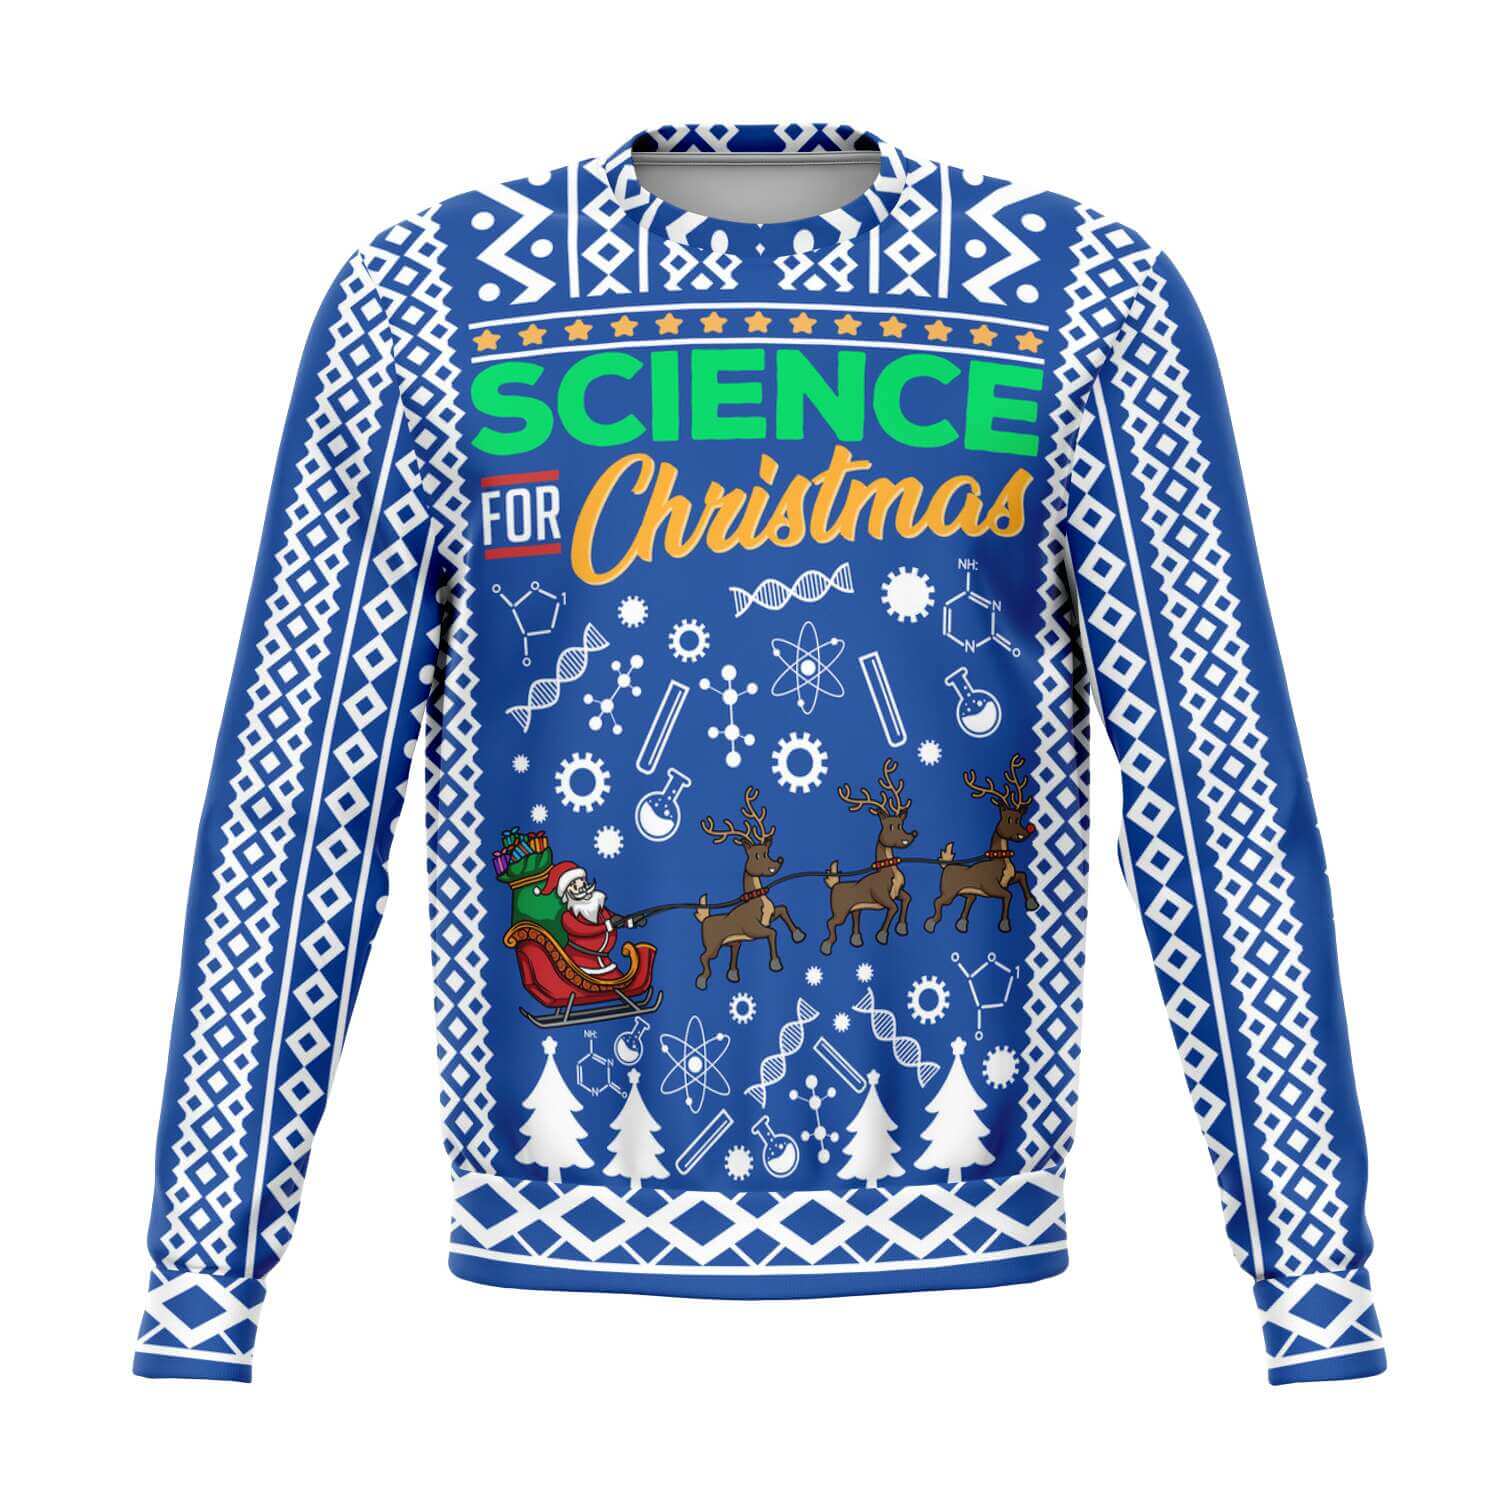 Science-for-Christmas-Athletic-Fashion-sweatshirt